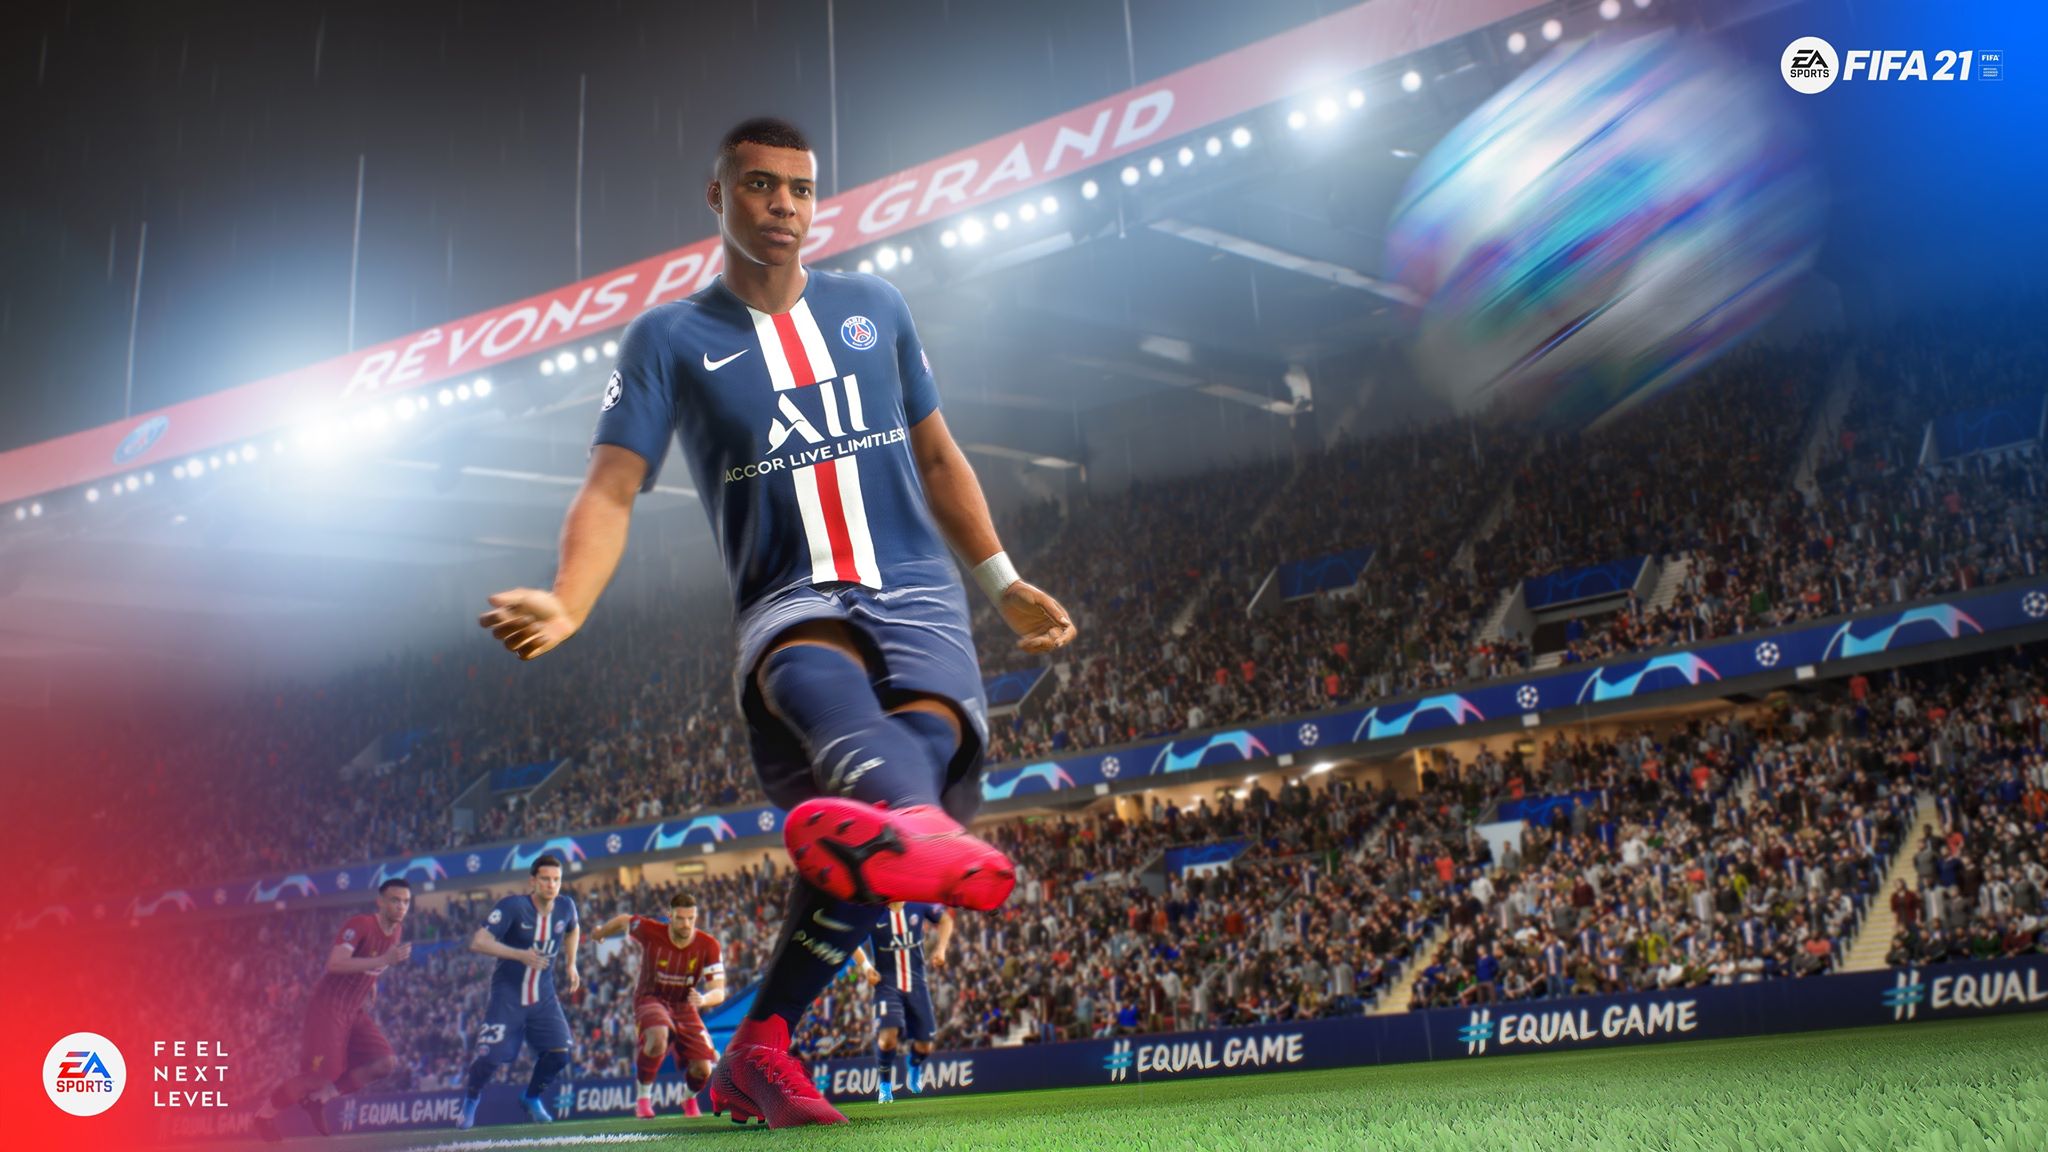 ما الجديد الذي يقدمه نمط المهنة Career Mode في FIFA 21؟